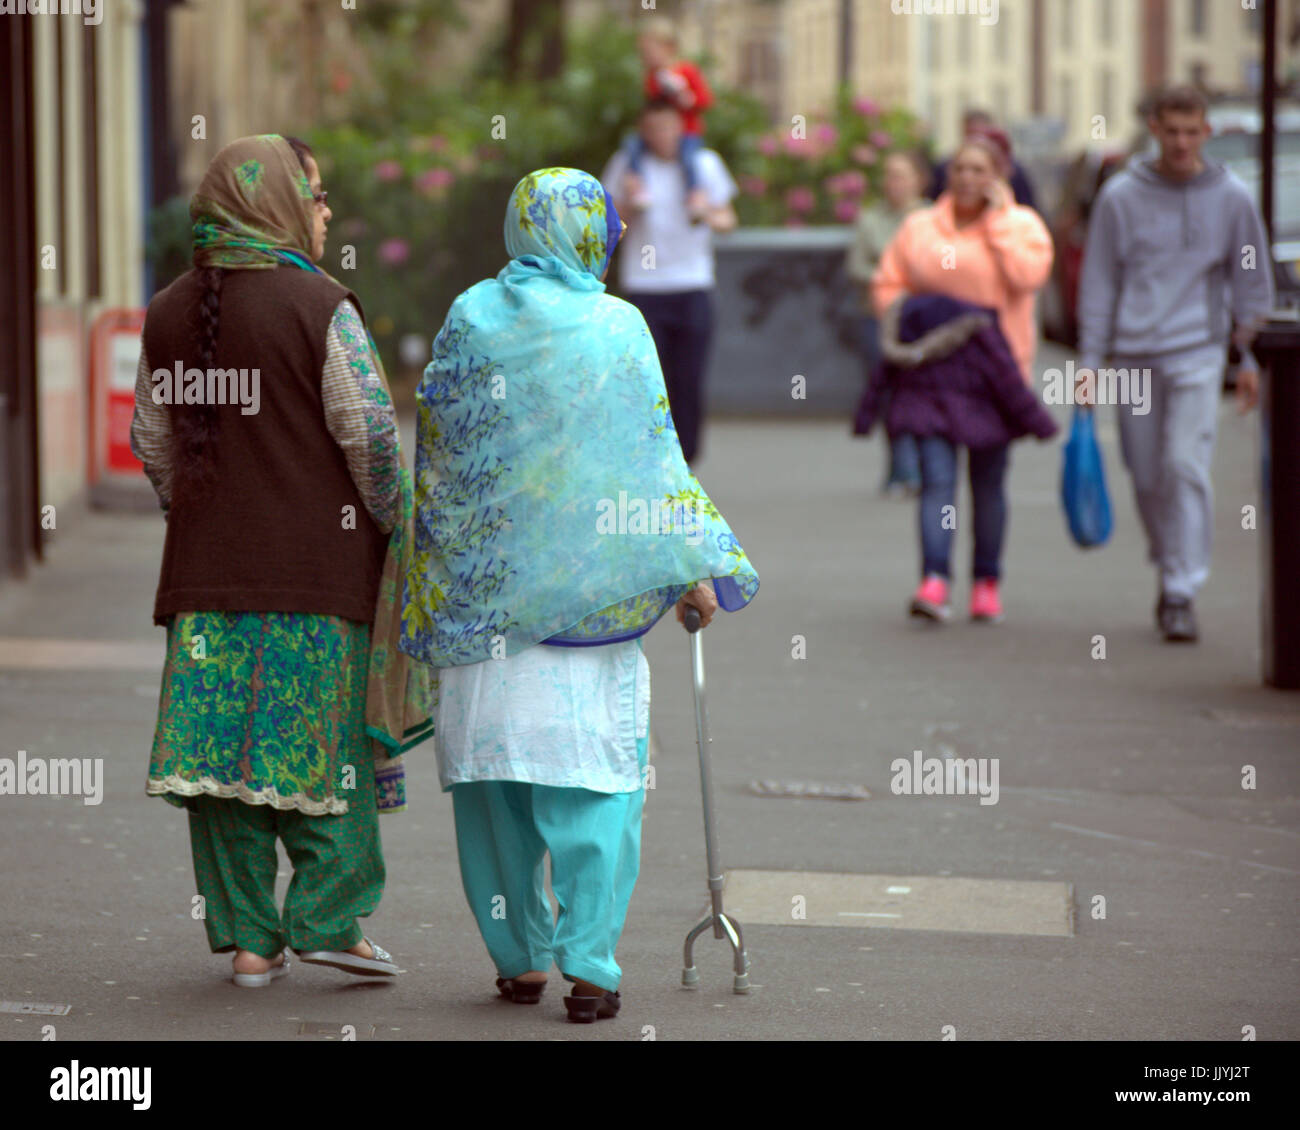 Refugiados asiáticos visten el Hijab pañuelo sobre calle escena cotidiana en el REINO UNIDO Foto de stock